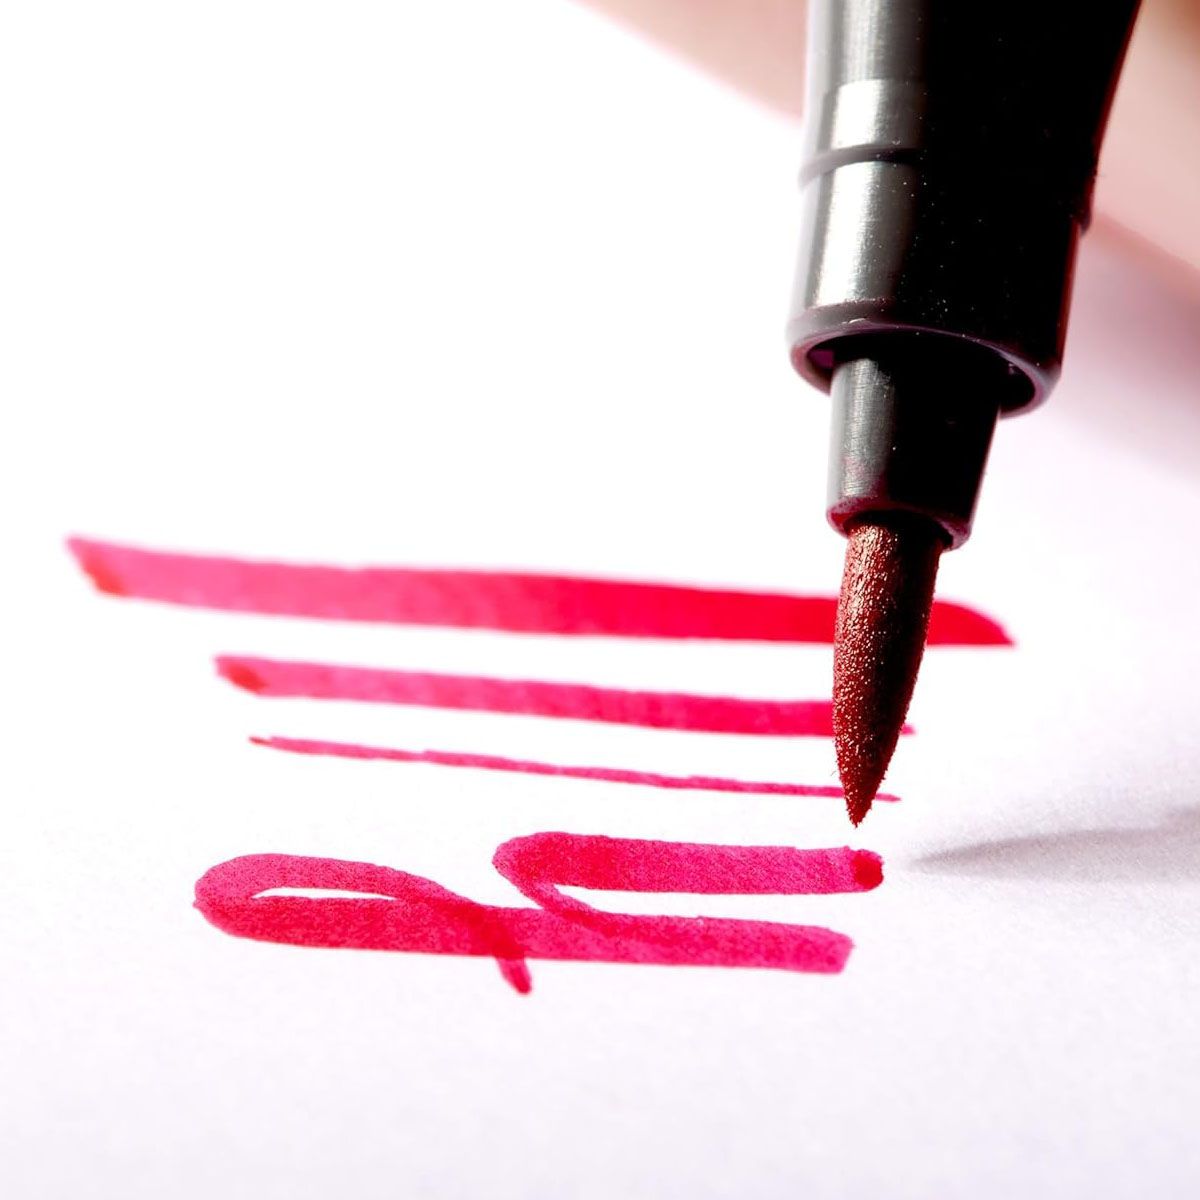 High-quality fibre-tip pen with a soft brush nib